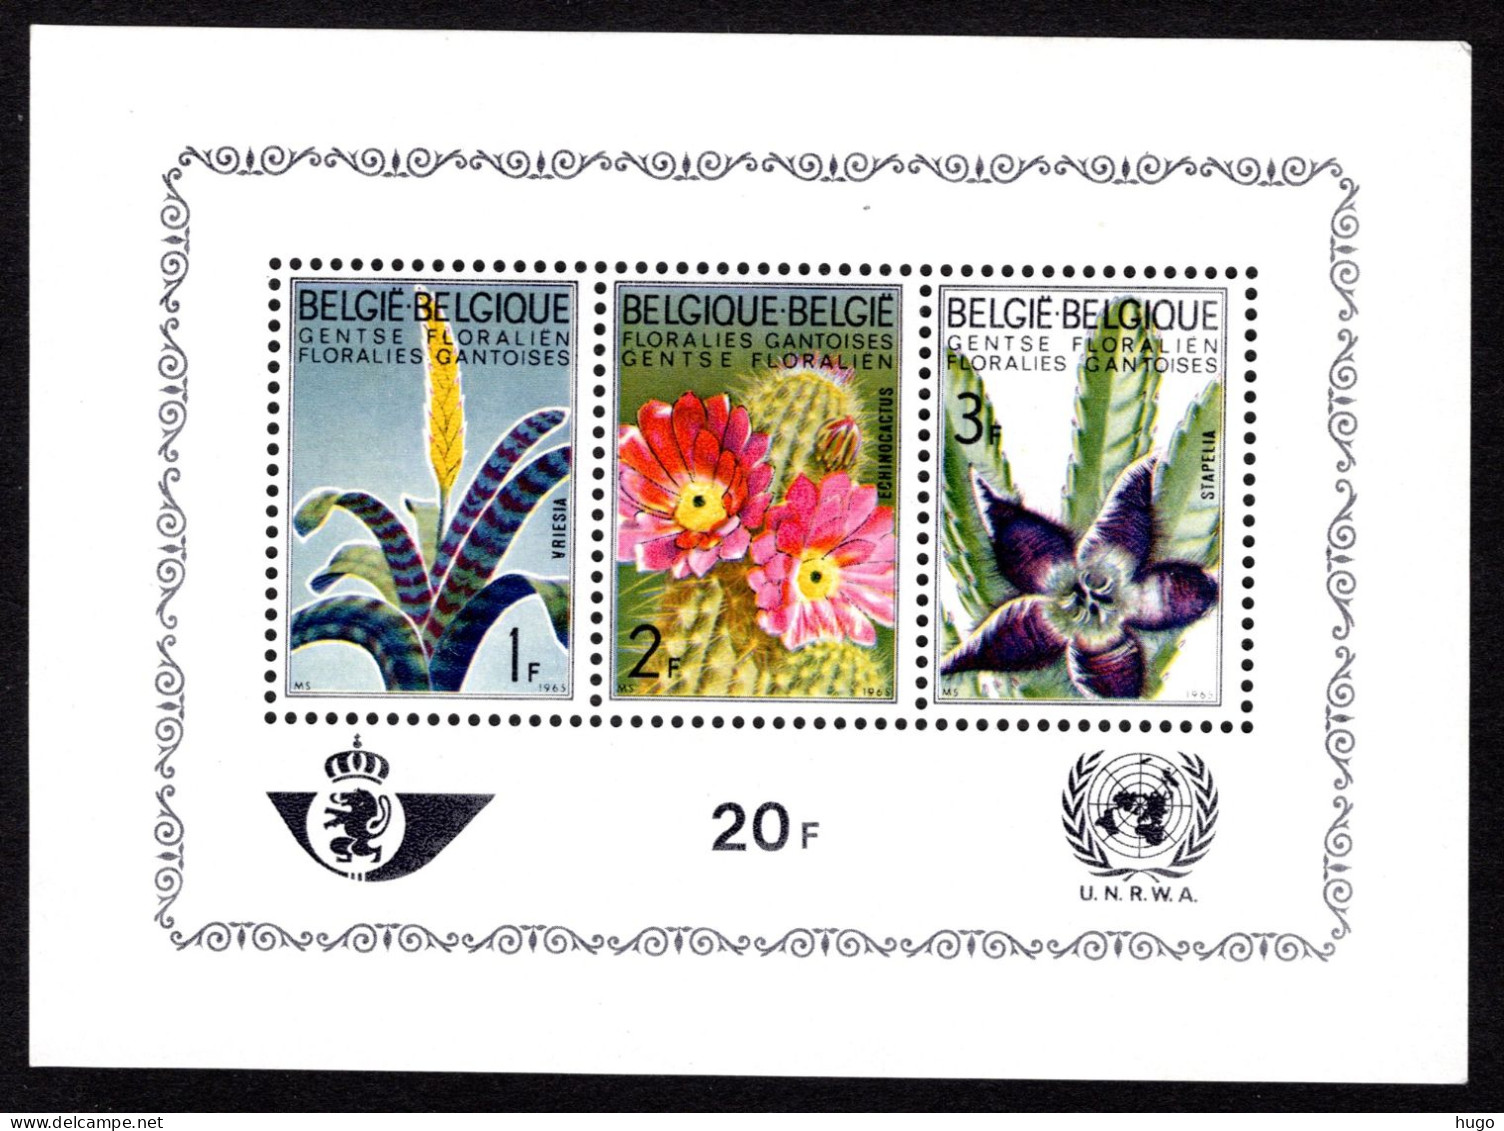 BL38 MNH 1965 - Gentse Floraliën III - 1961-2001